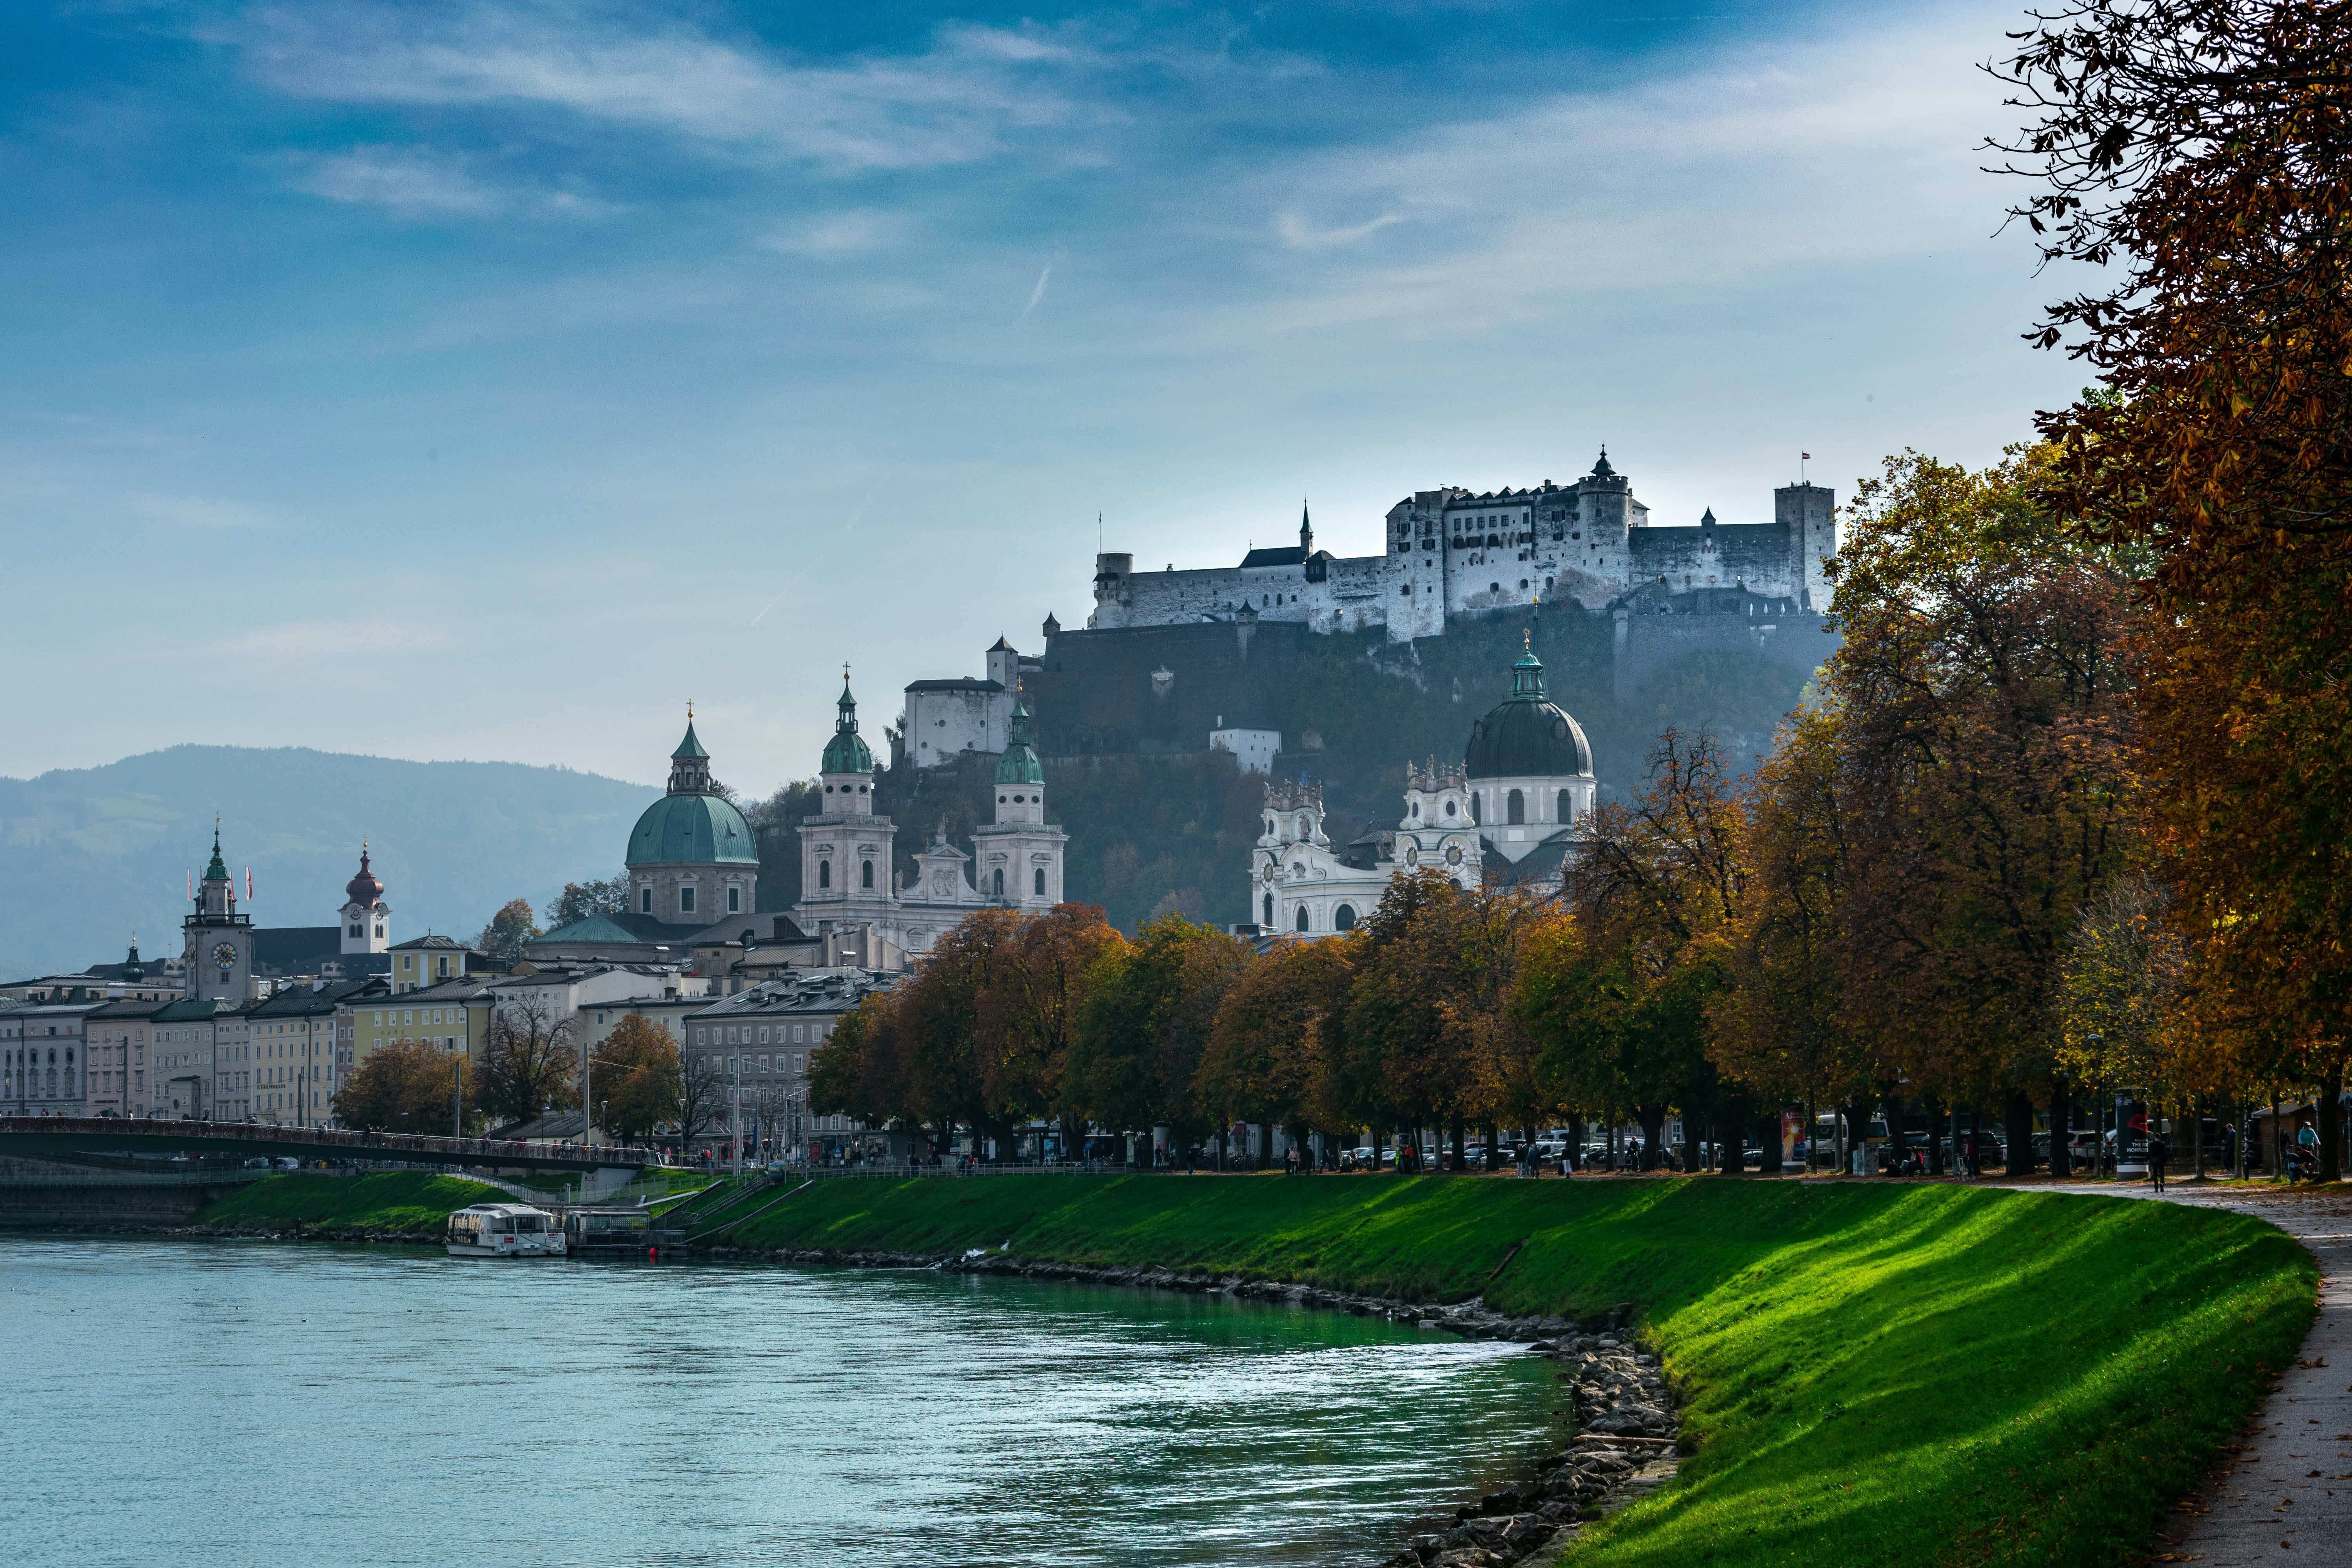 Erleben Sie in Wals-Siezenheim, Salzburg, einen Alltag voller Lebensqualität und regionaler Highlights. Entdecken Sie die Schönheit dieser lebenswerten Stadt!